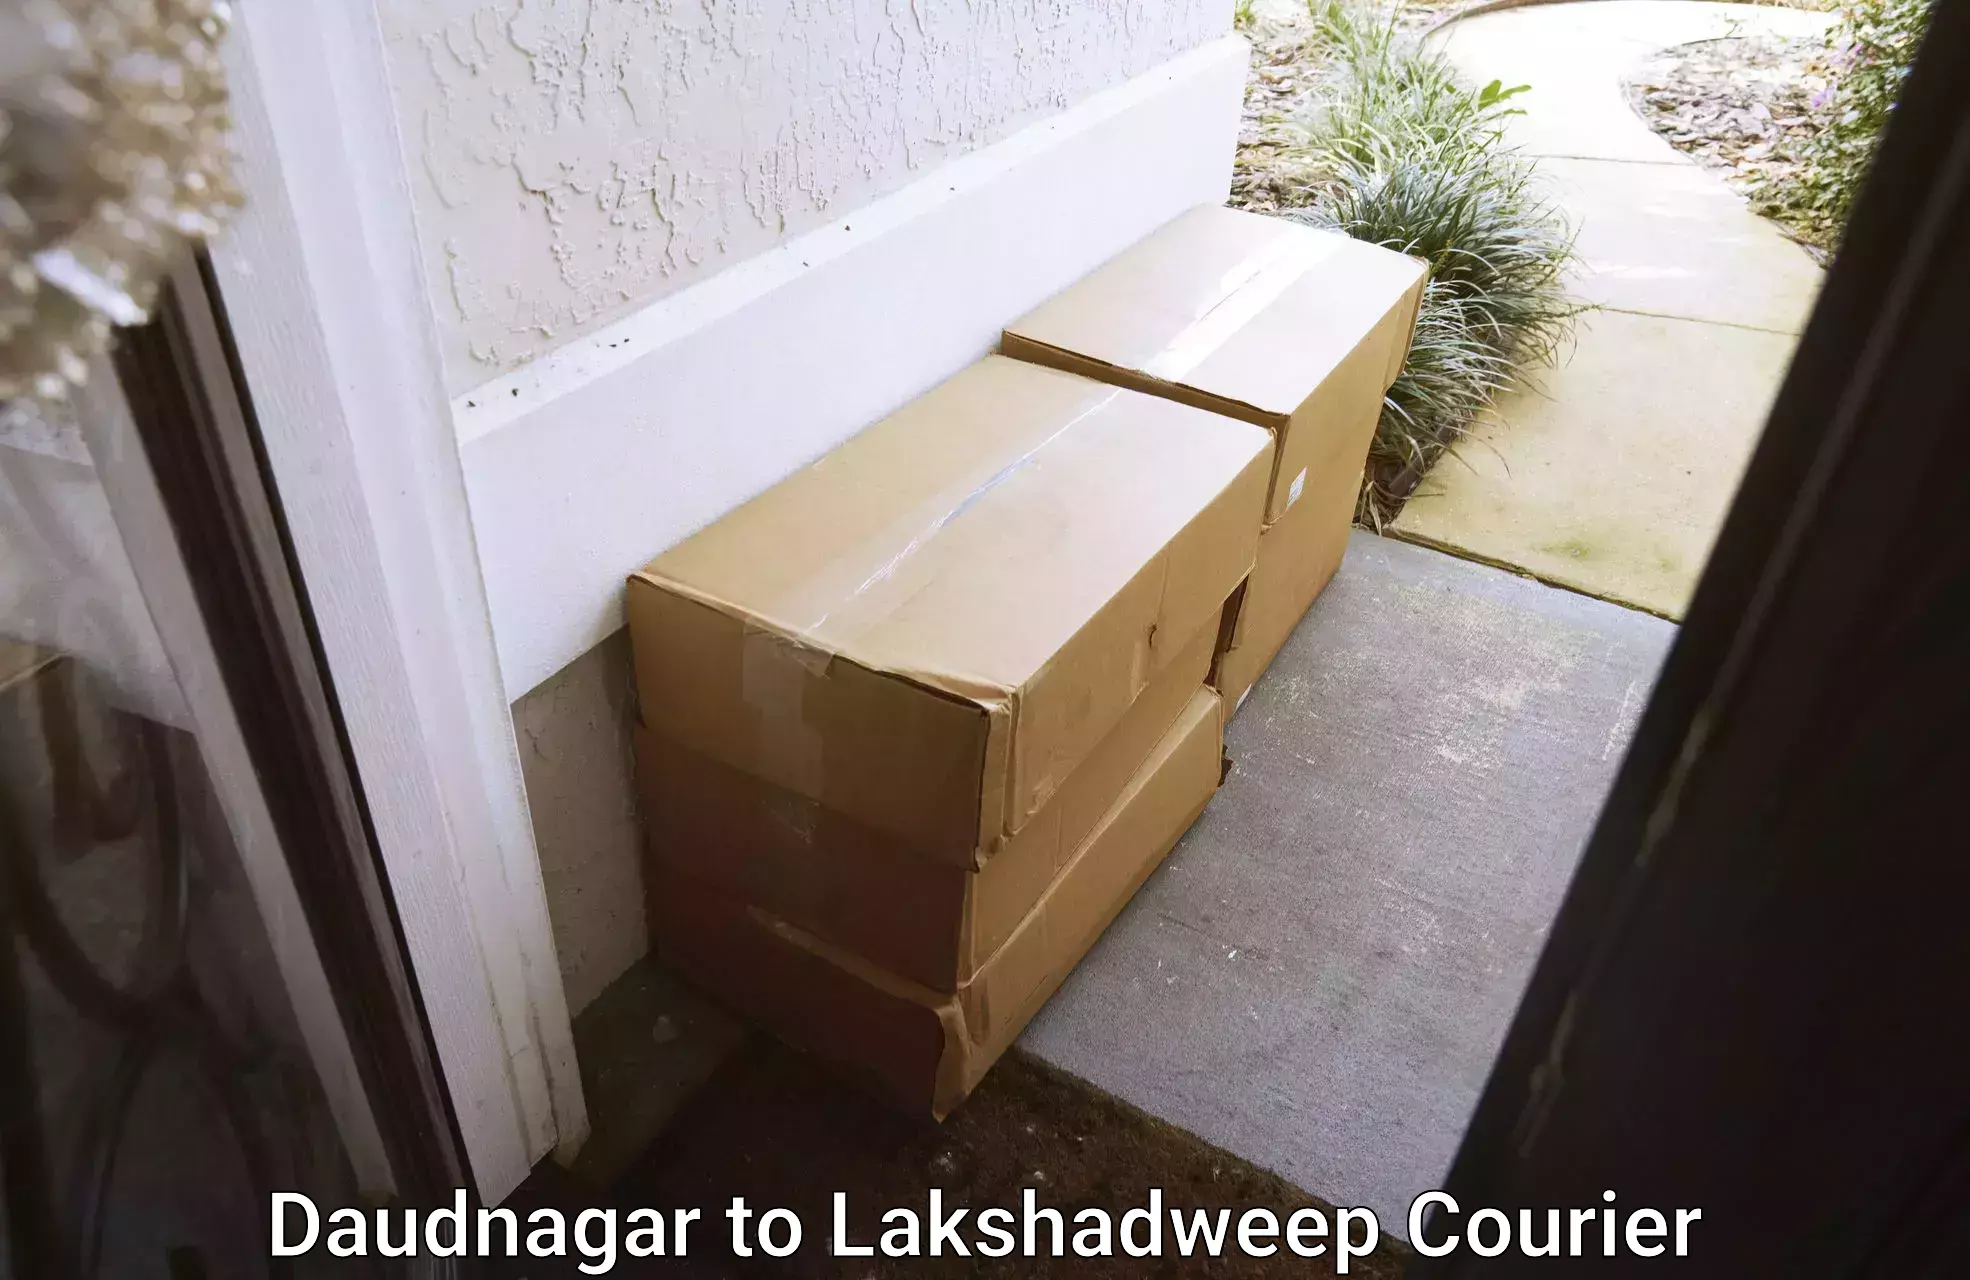 Professional furniture moving in Daudnagar to Lakshadweep